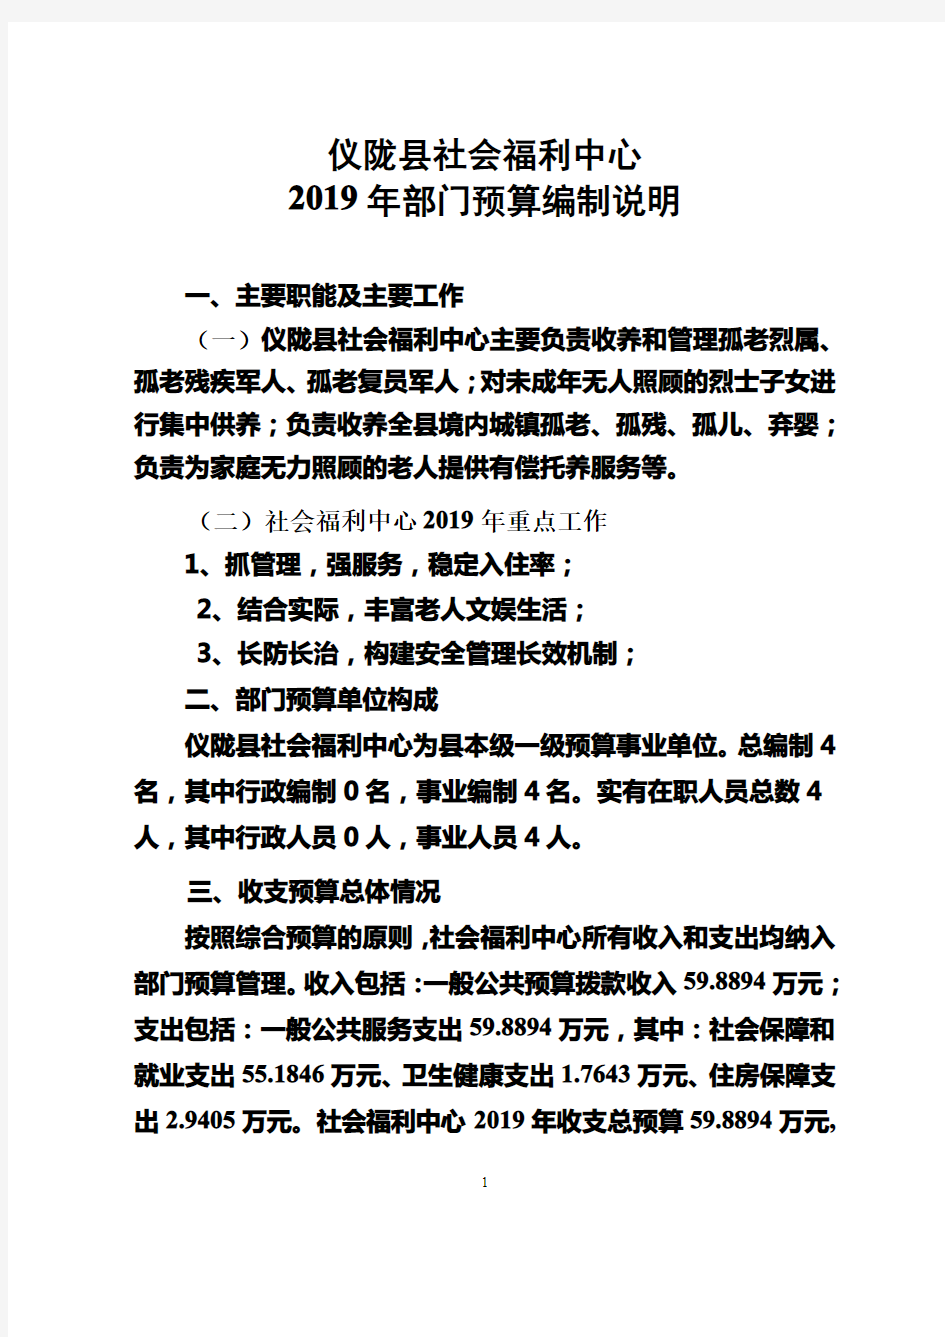 仪陇县社会福利中心2019年部门预算编制说明